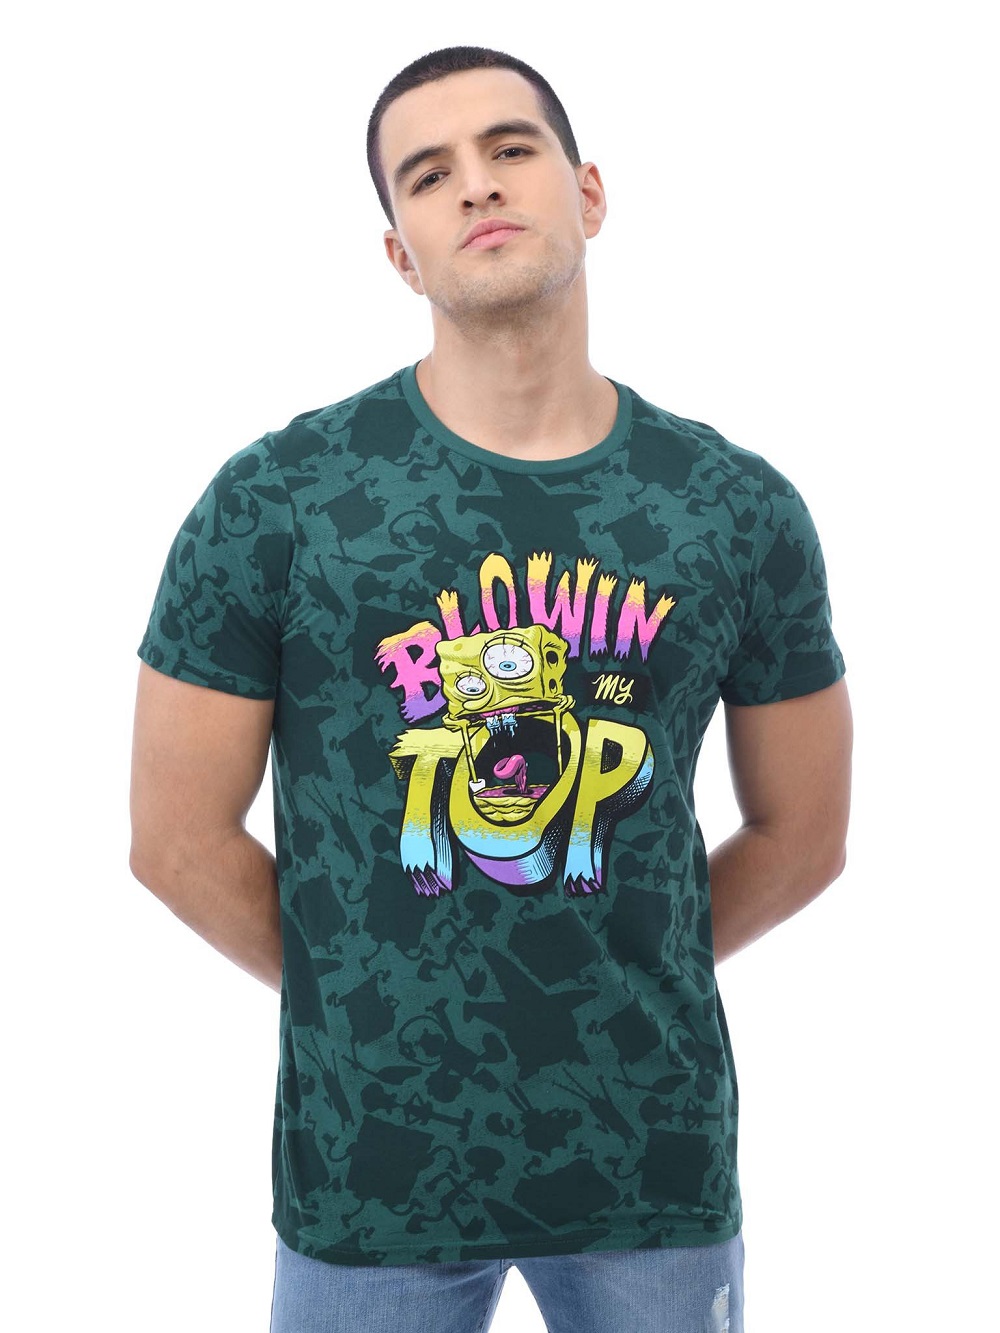 Gangster Spongebob Blowin Top 3d Shirt Size Up To 5xl